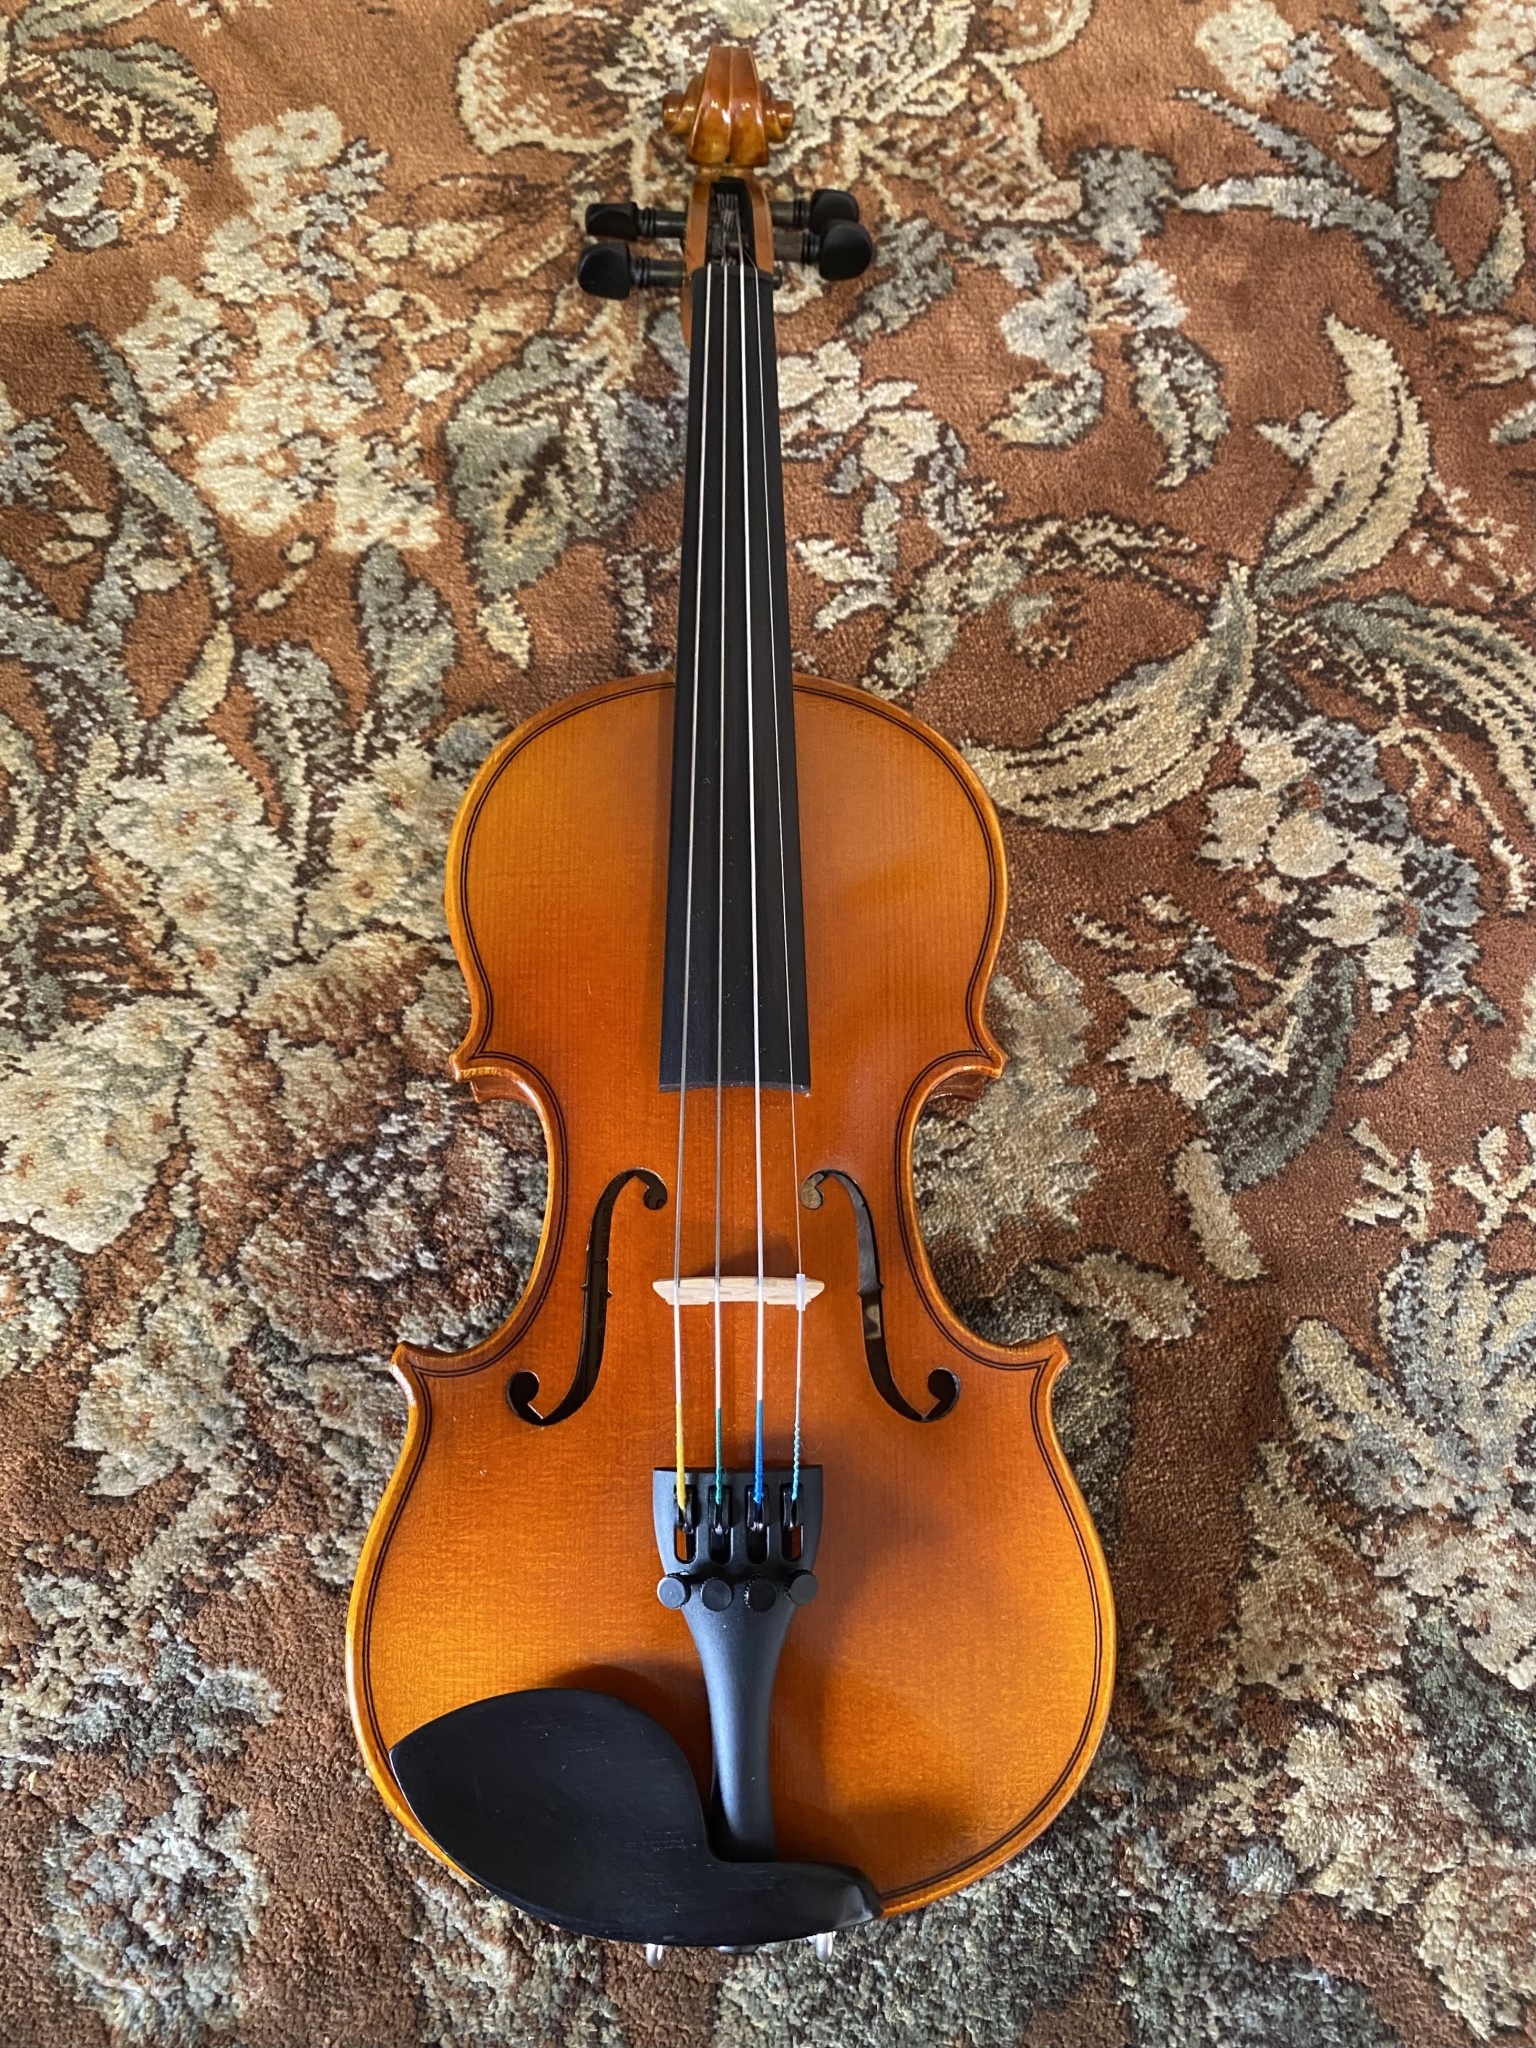 Serafina Serafina DX 1/10 violin with free case, bow, rosin & polish cloth